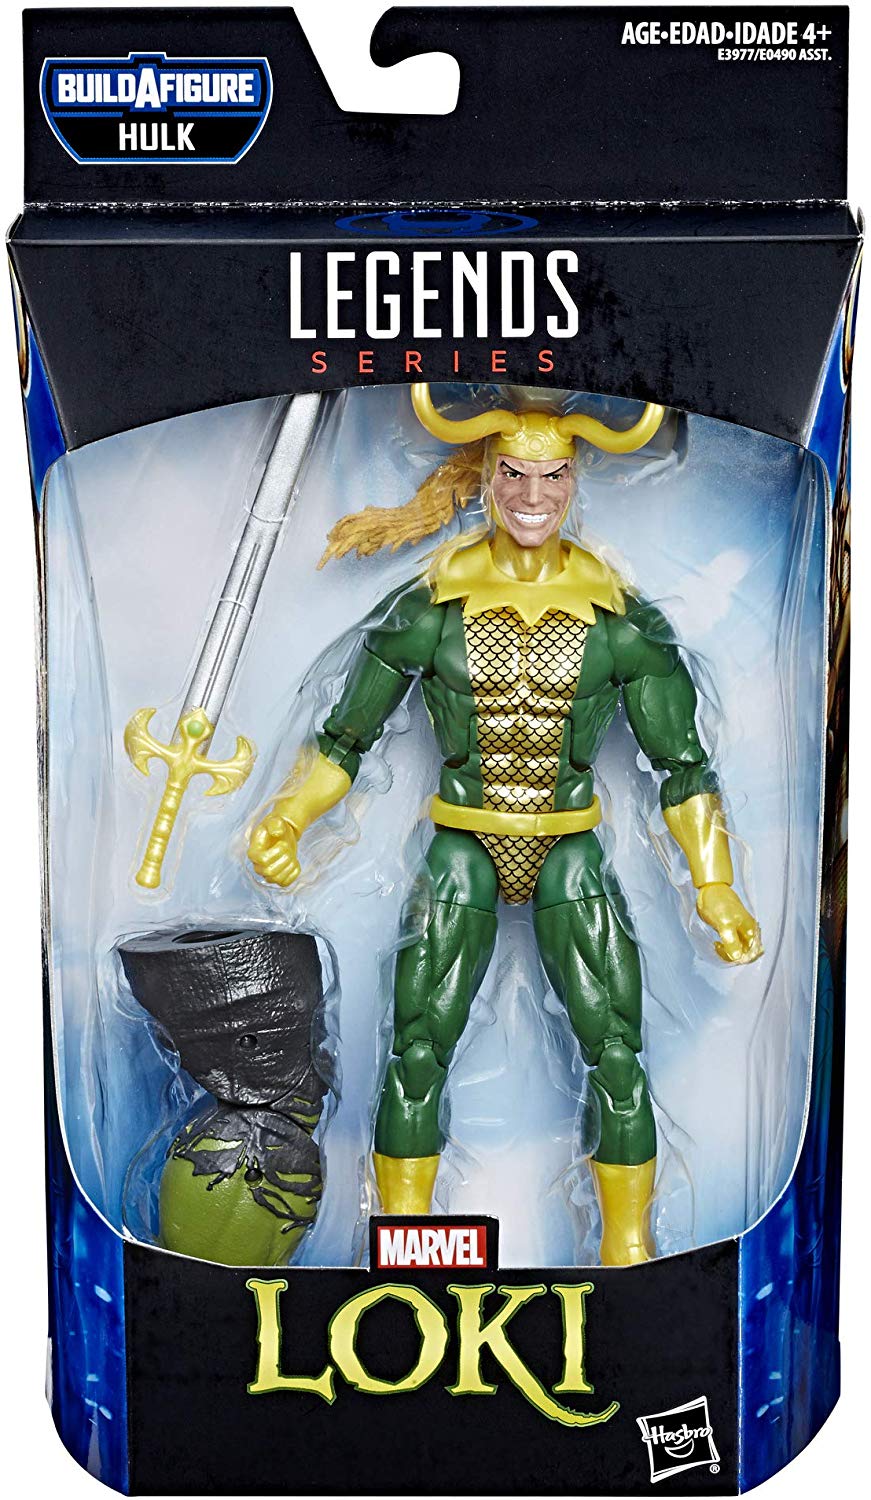 Marvel Legends Endgame Series Loki Hulk BAF Wave Action Figure 1